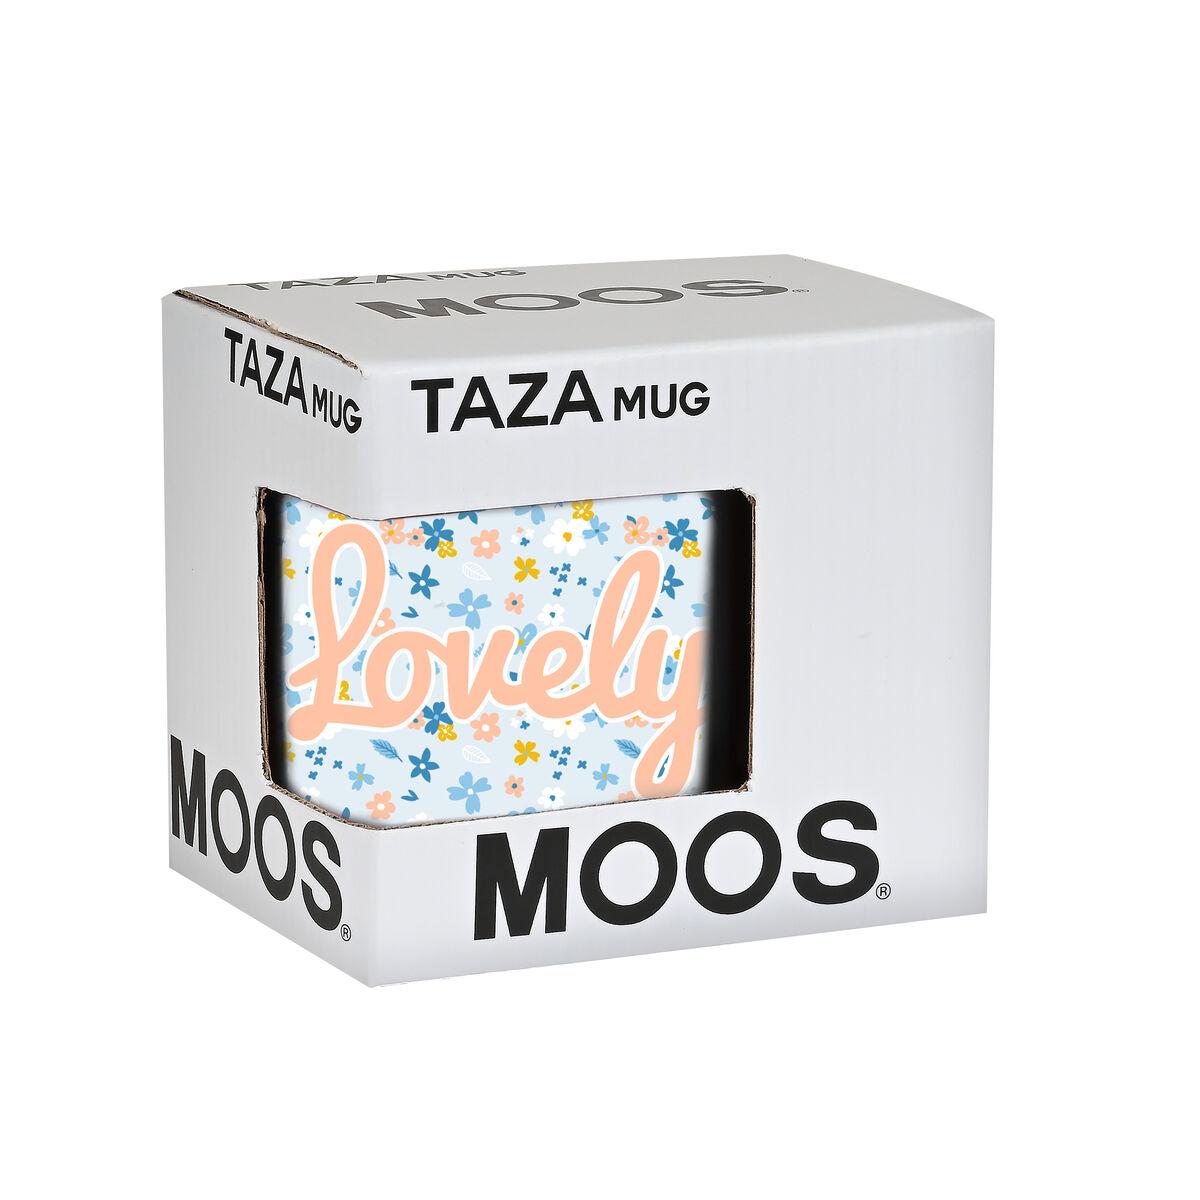 Taza Mug Moos Lovely Cerámica Azul claro (350 ml)